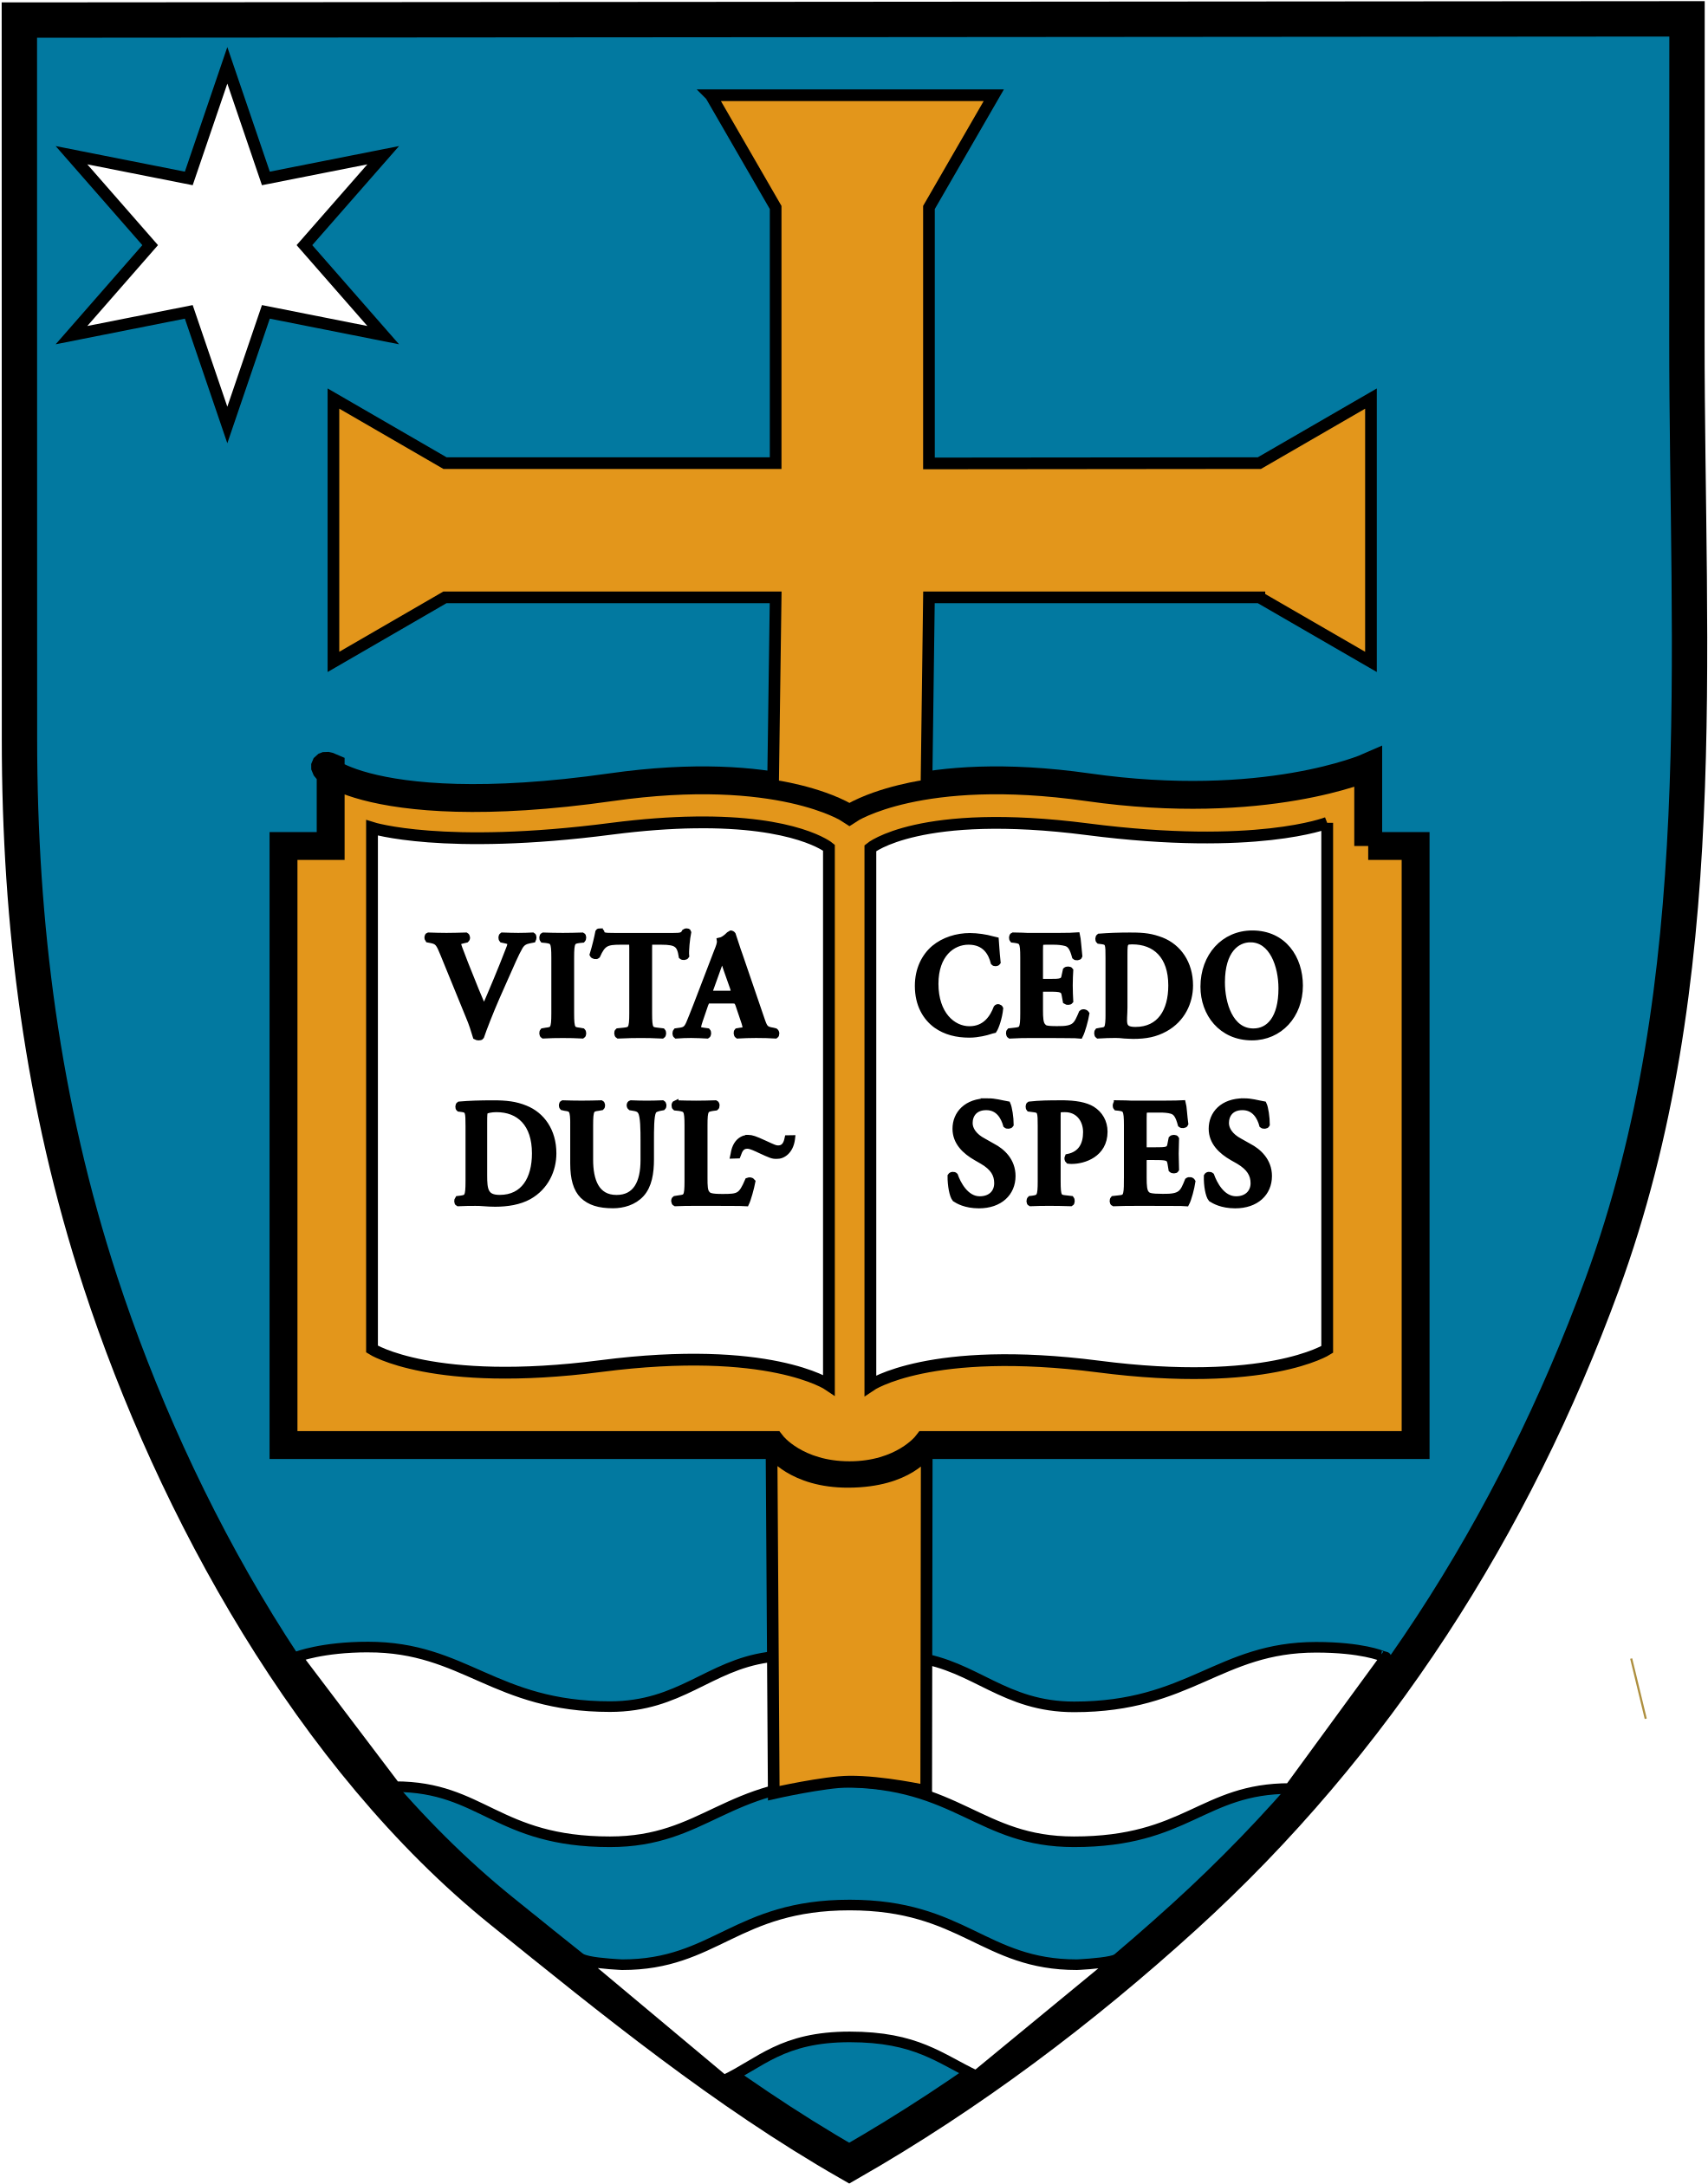 Notre Dame Law School - University Of Notre Dame (2000x2544)